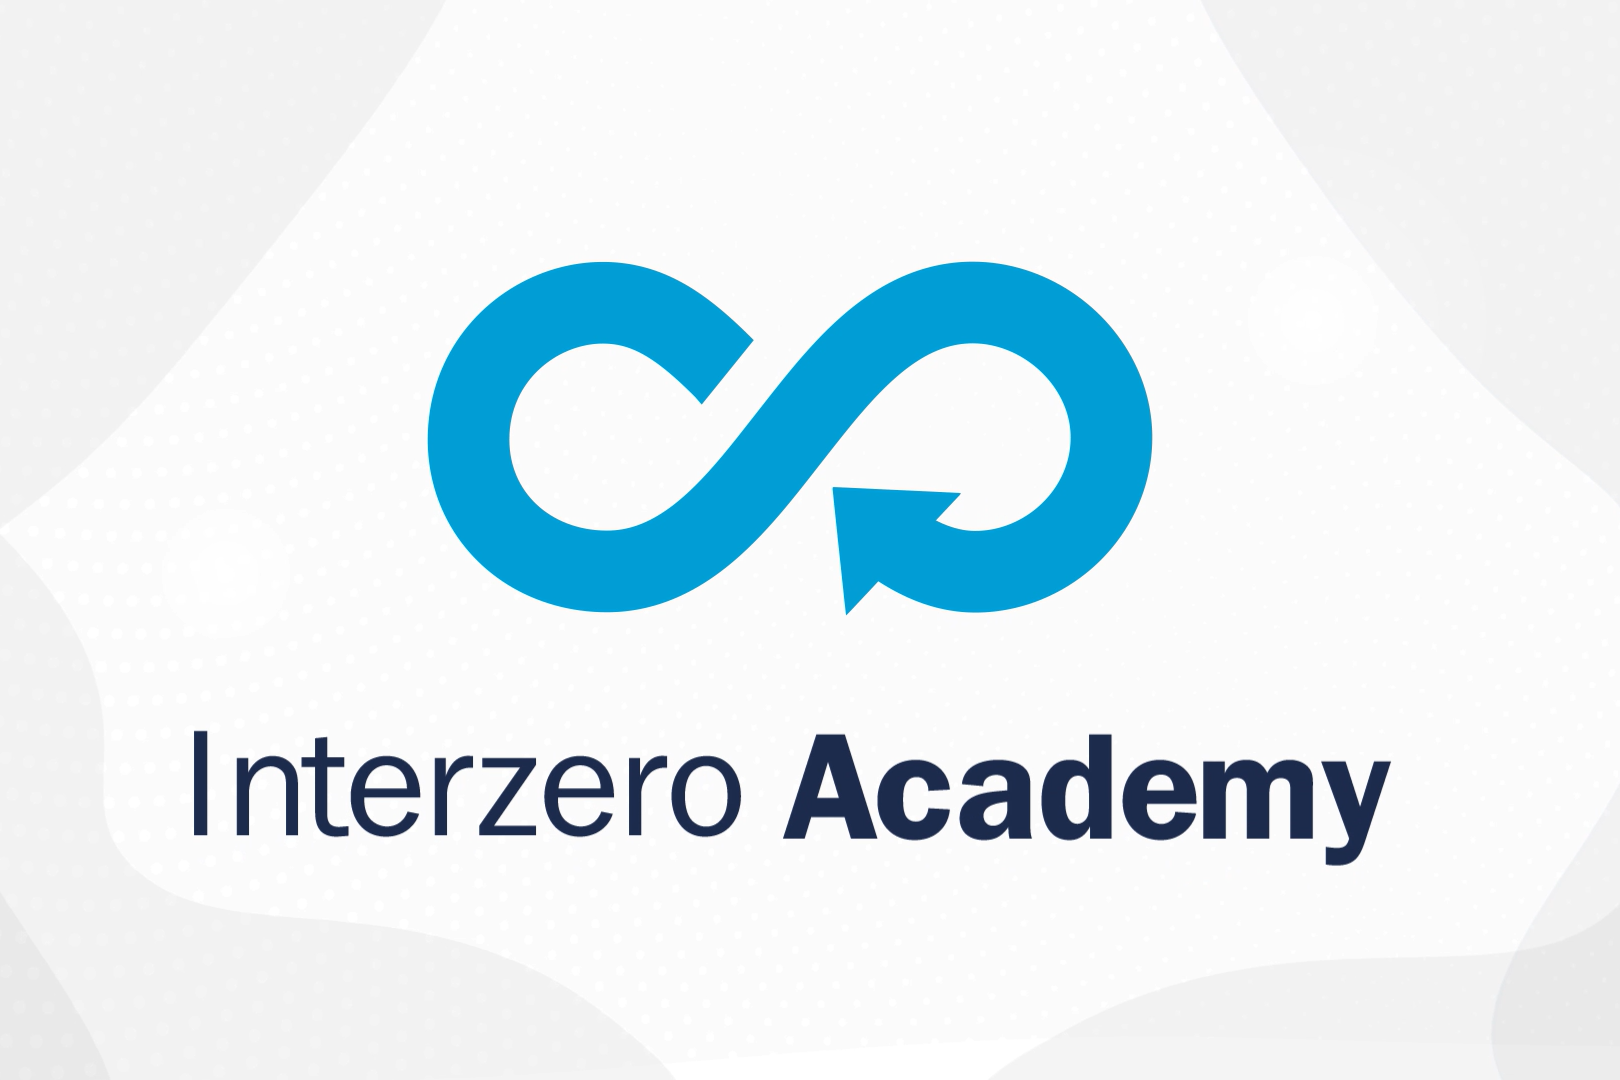 Logo Interzero Academy - cyforwej platformy z webinarami i szkoleniami z zakresu ochrony środowiska